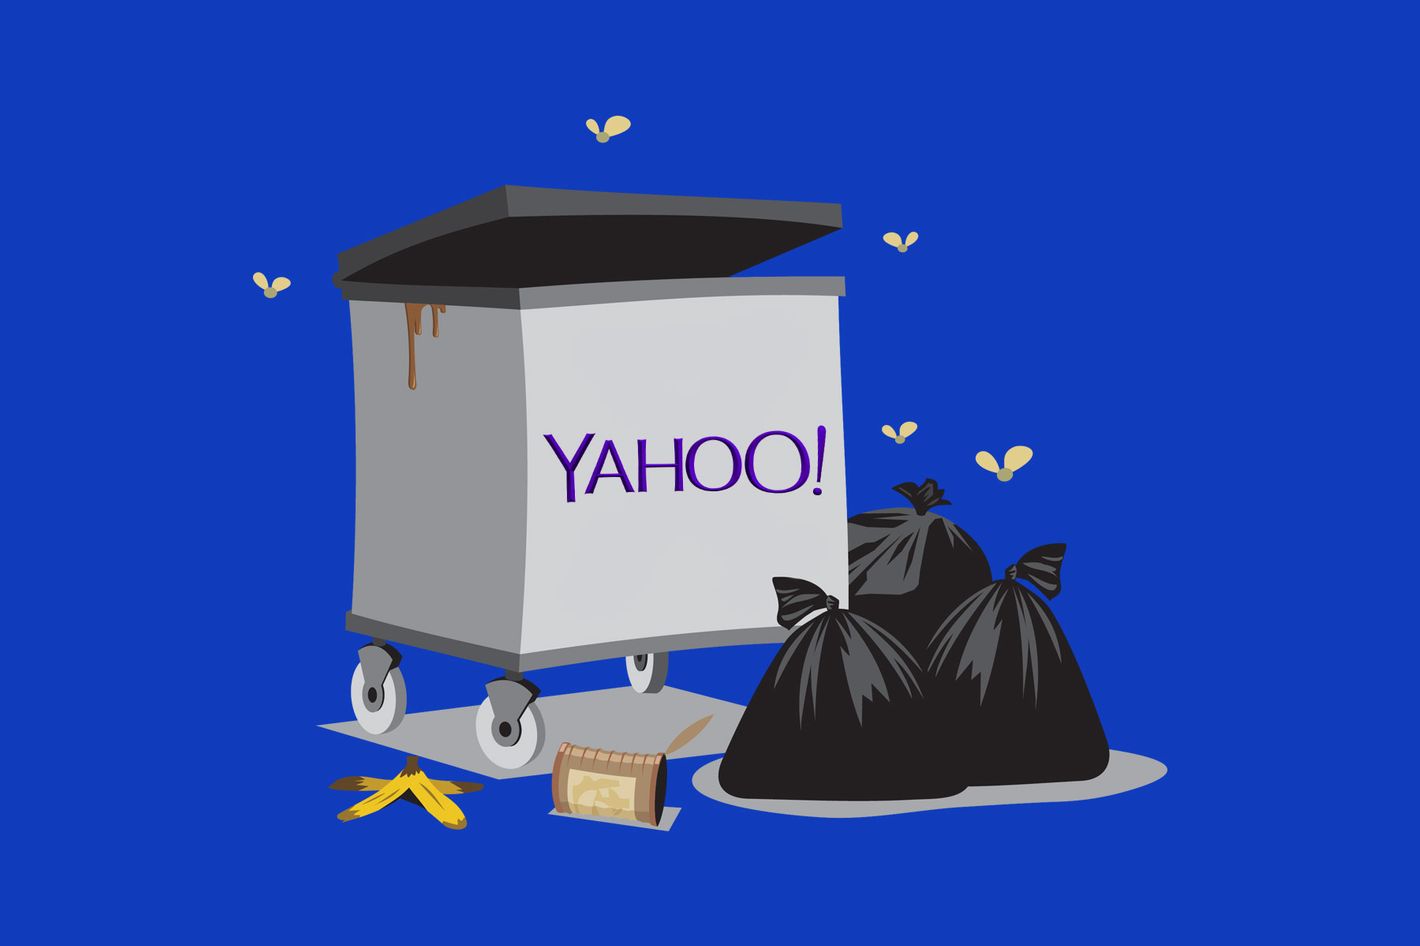 Does anyone still use Yahoo?